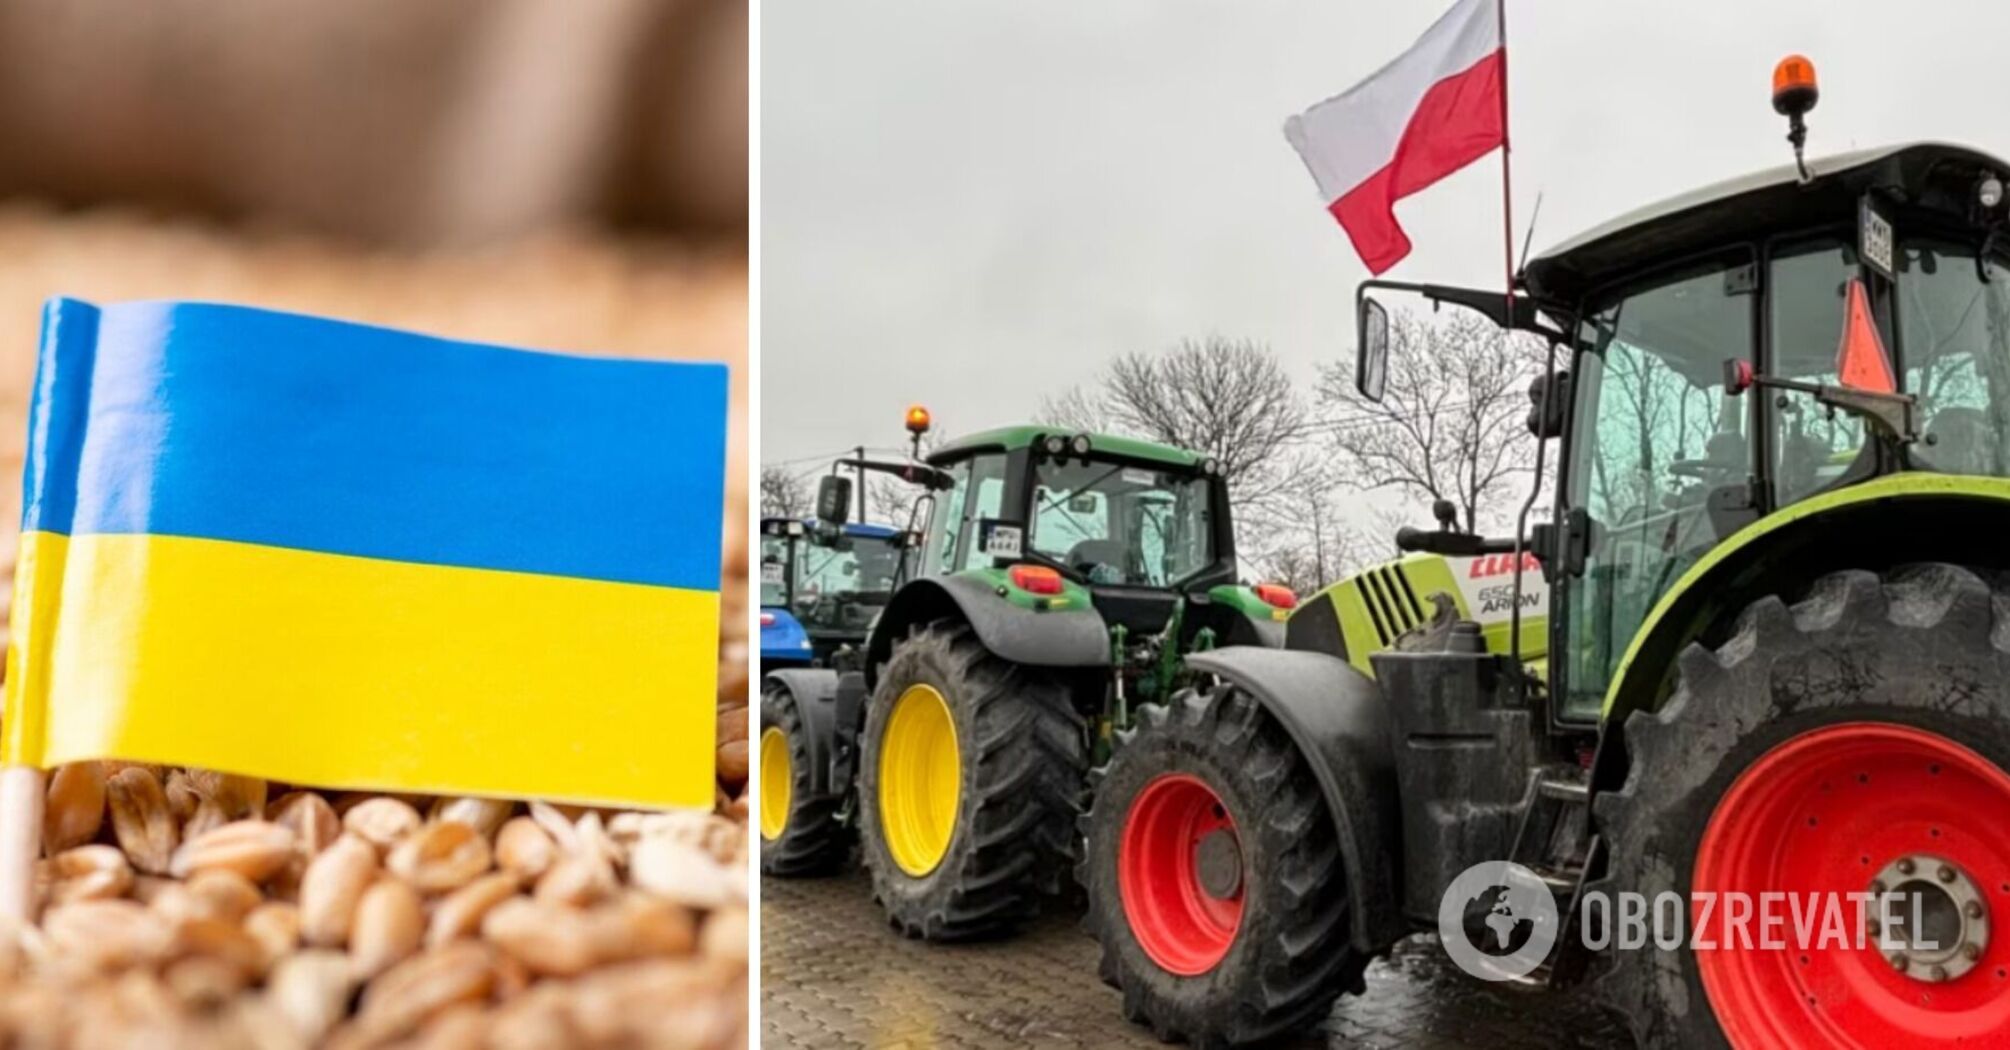 Ukraina i Polska przeprowadziły rozmowy